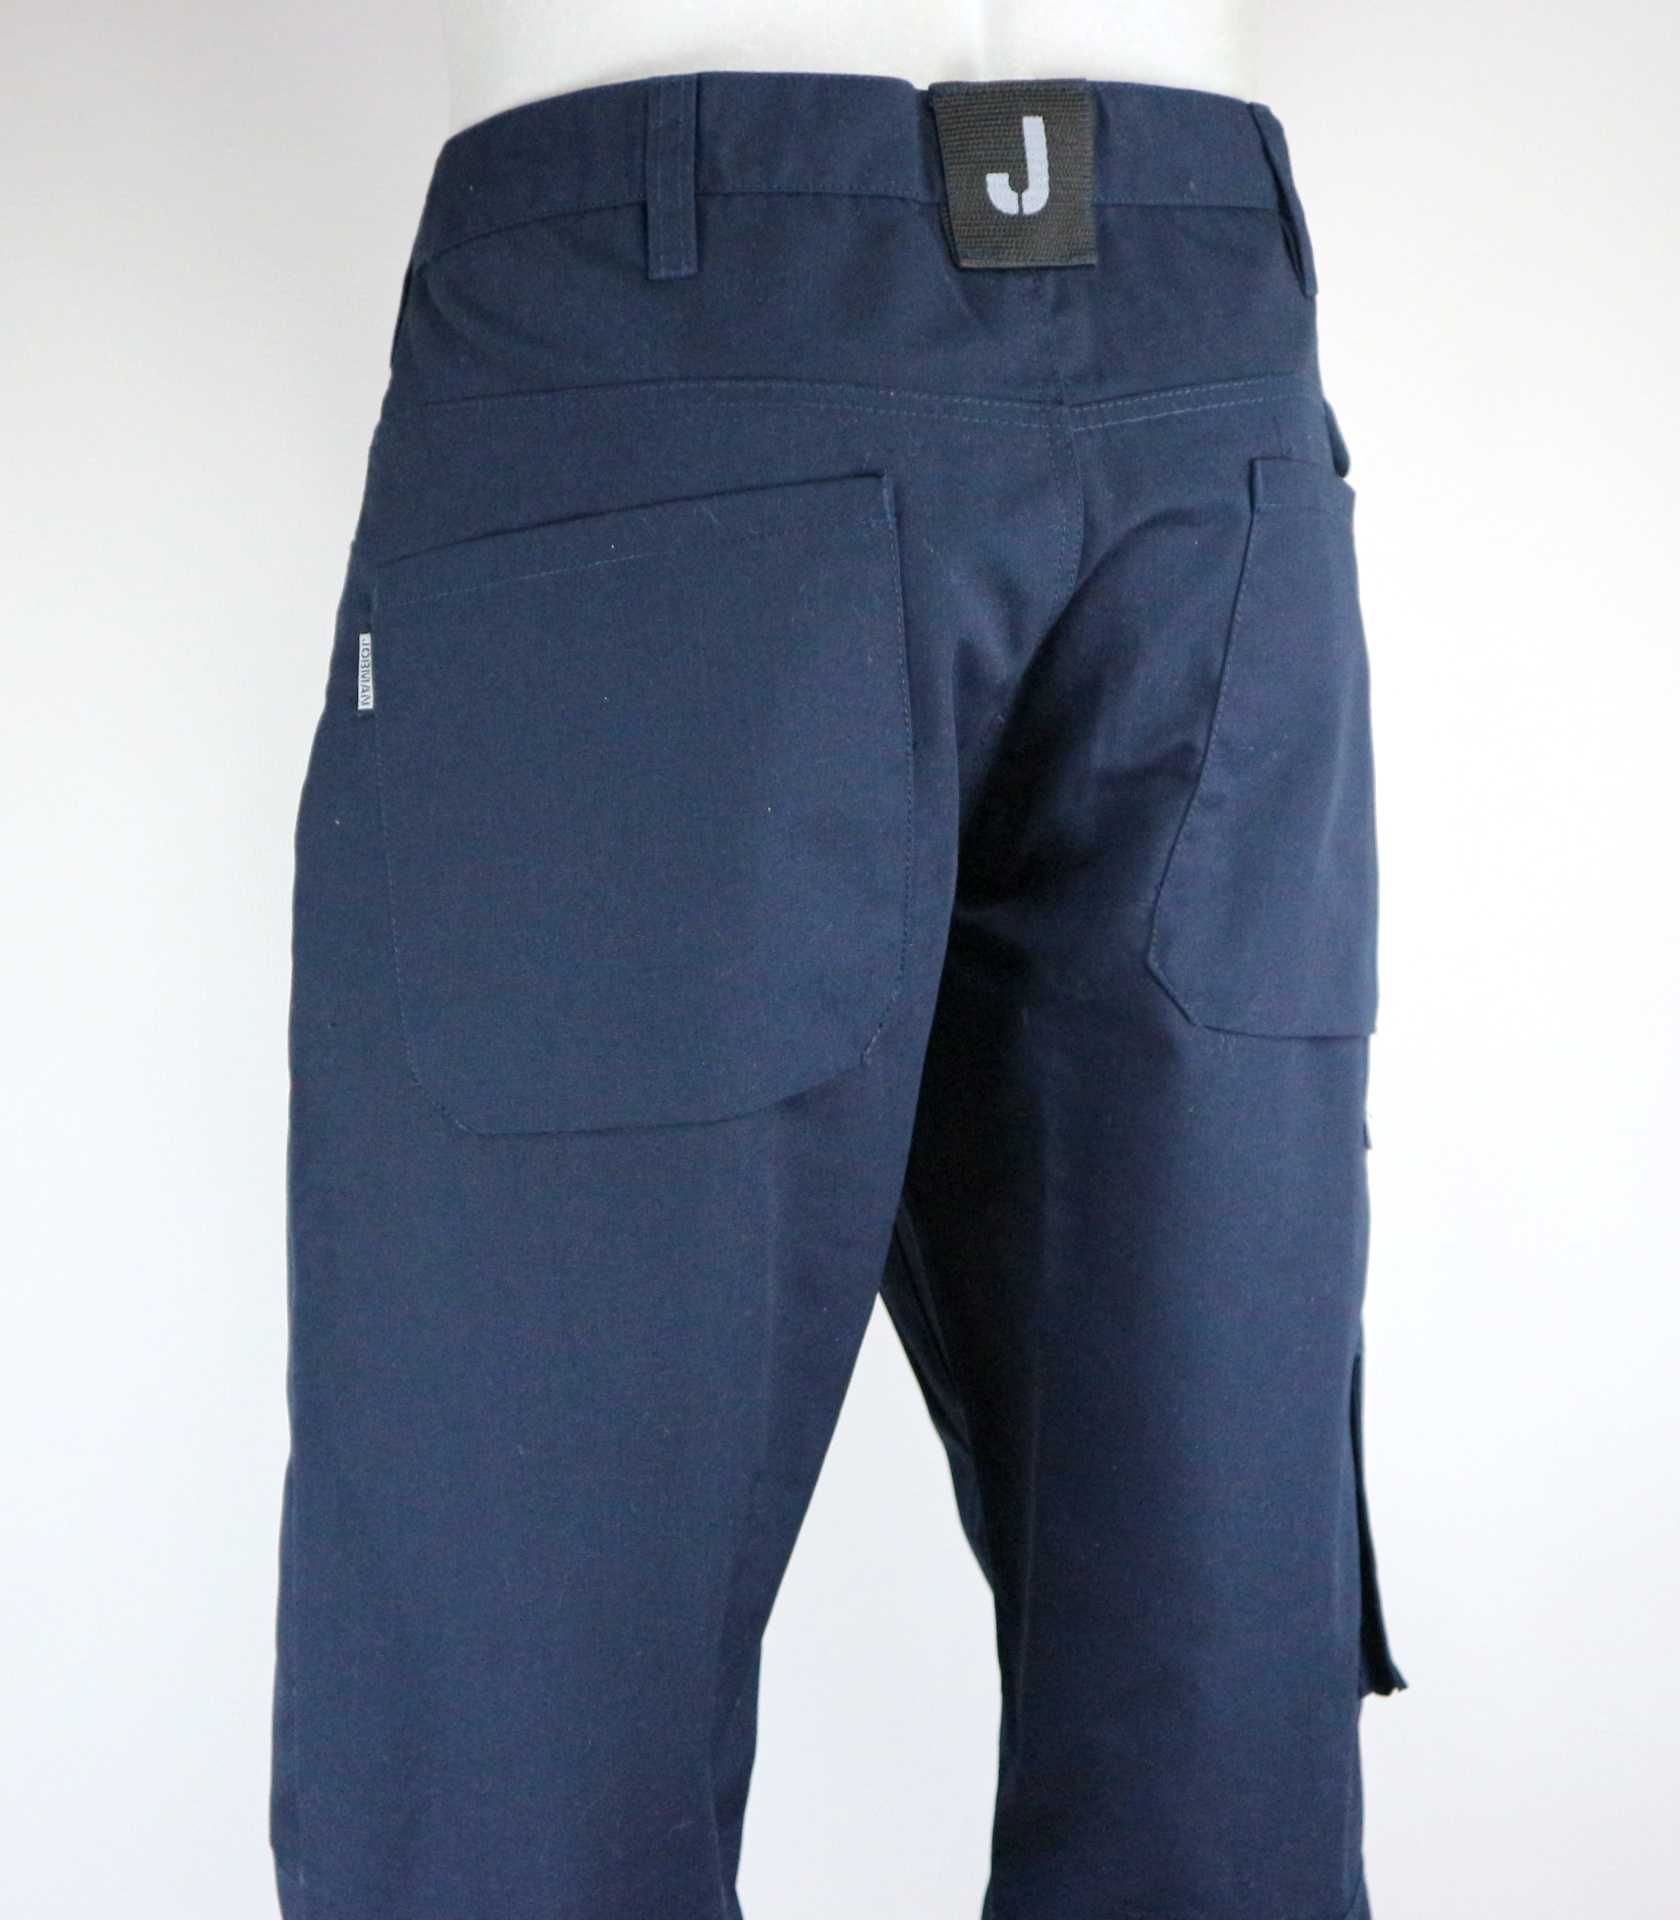 Jobman spodnie robocze serwisowe 52 (XL)